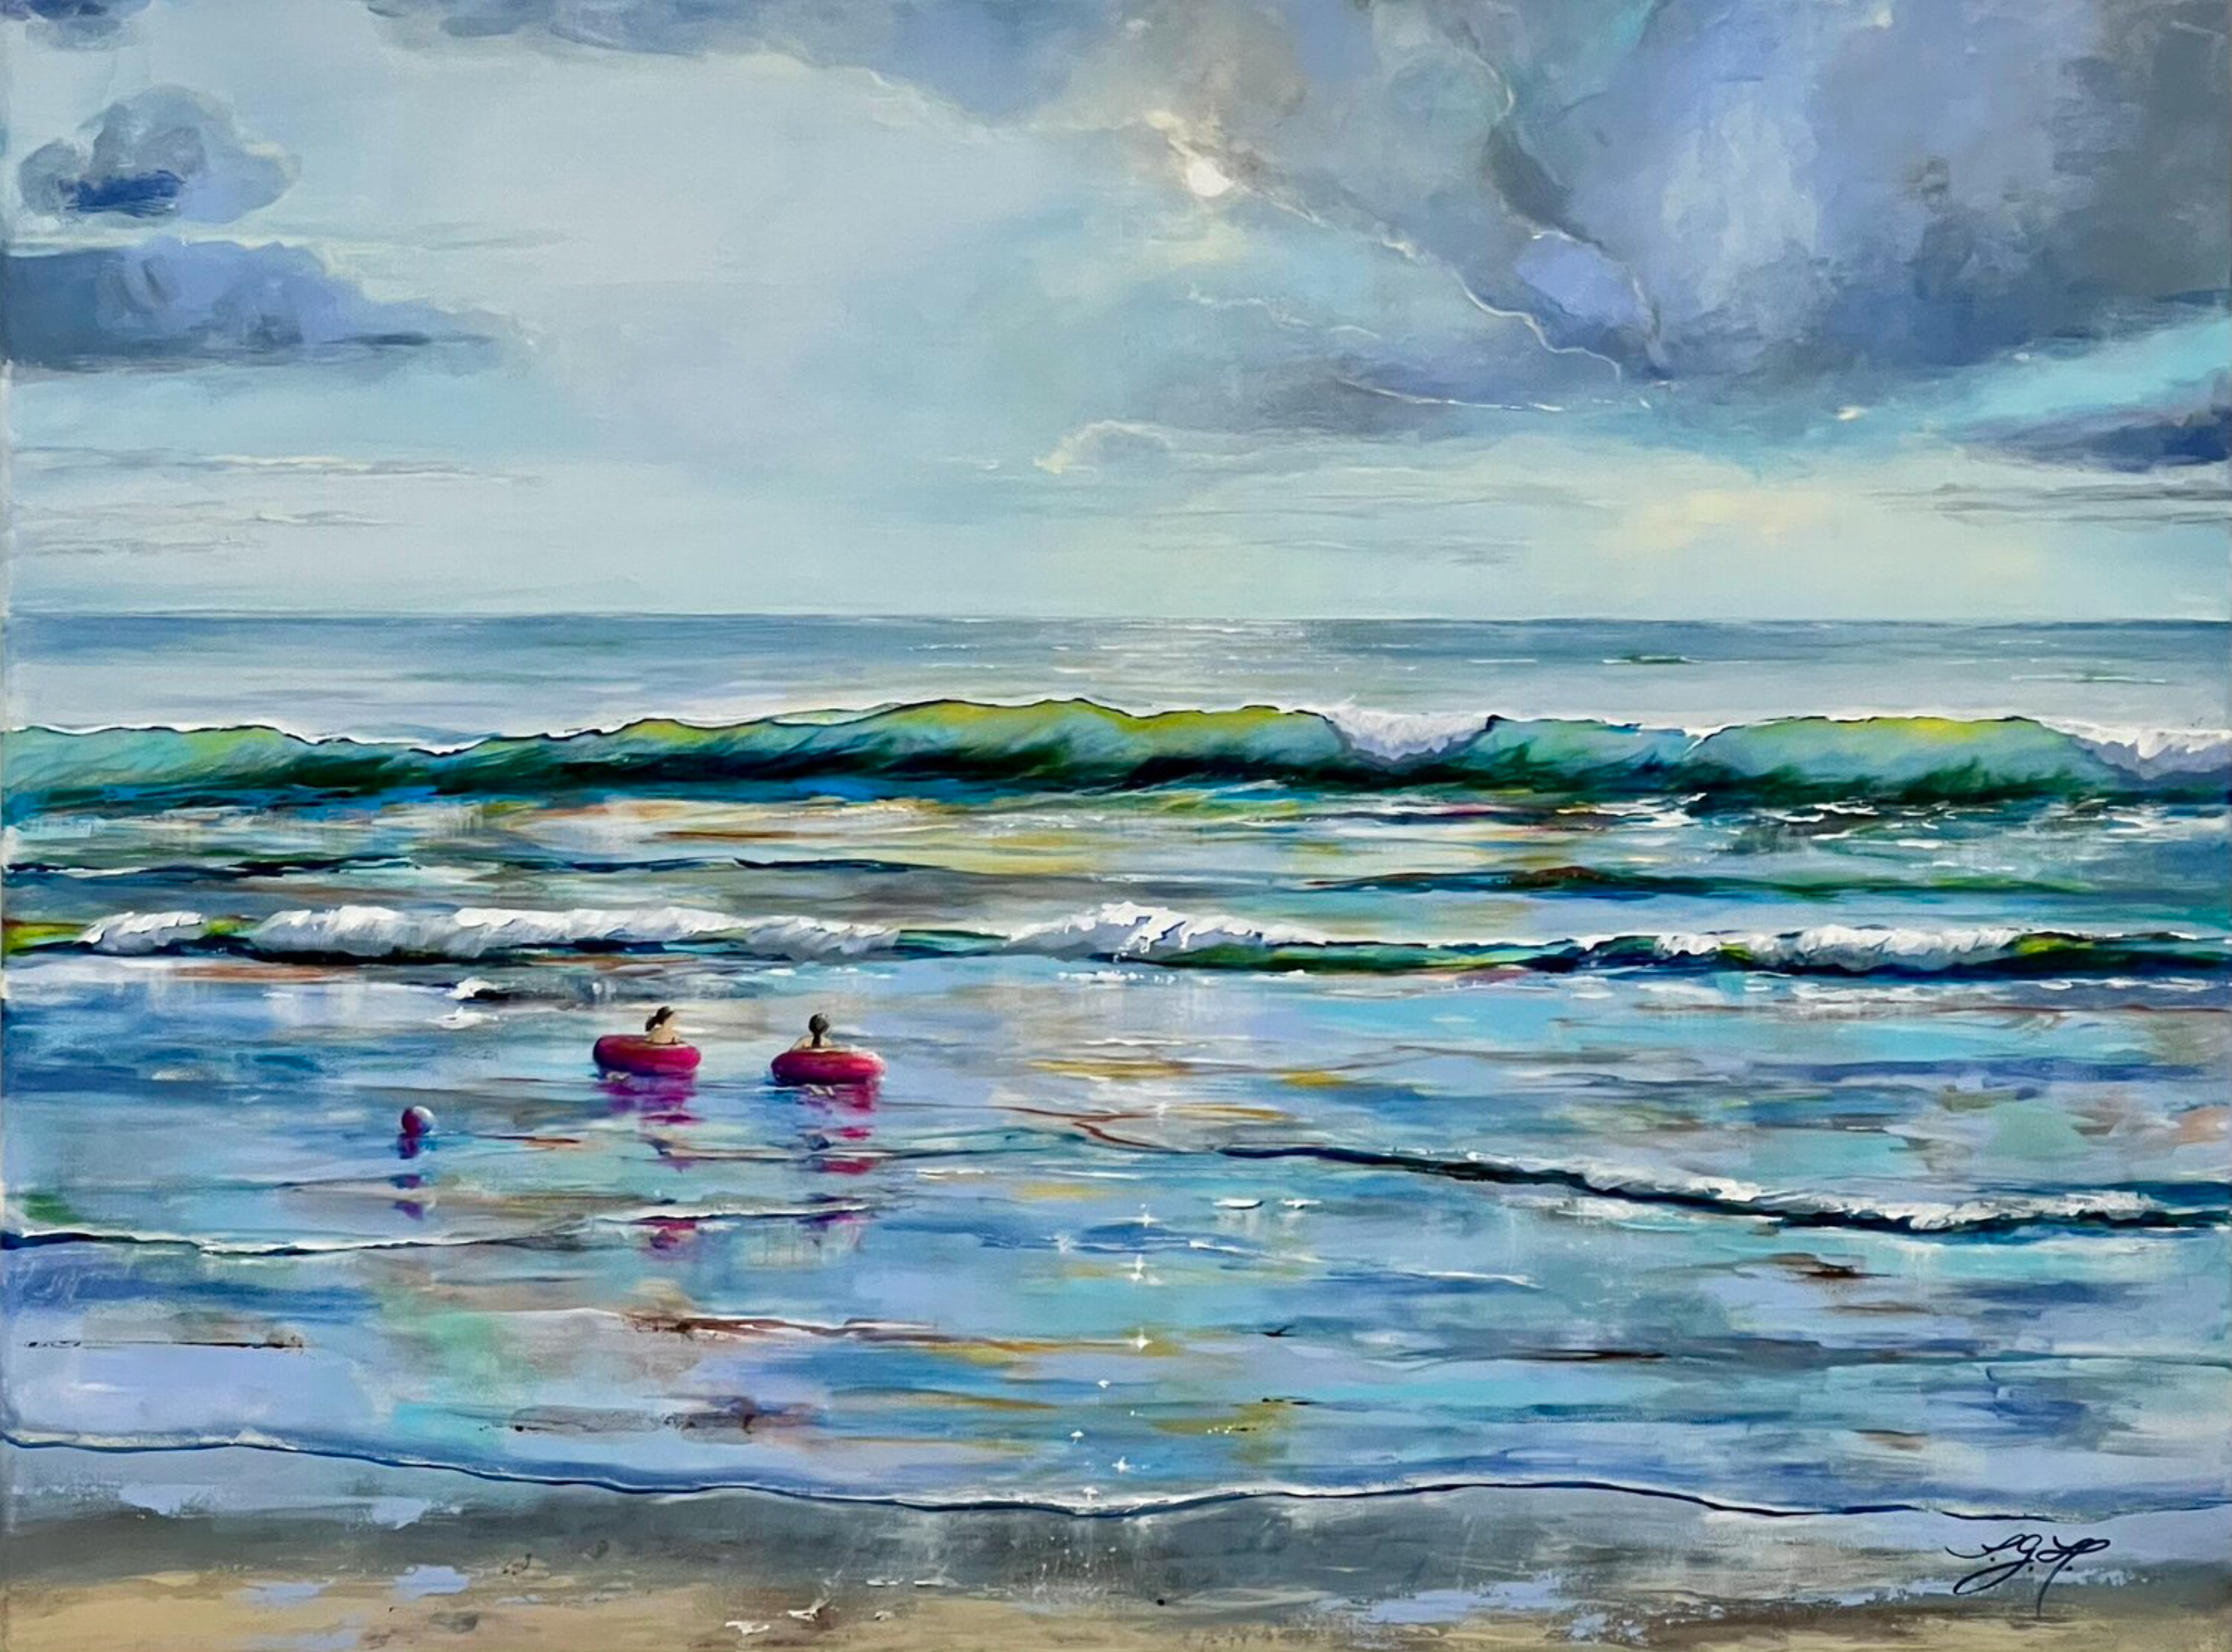 El cuadro "Summertime 1" de Sandra Gebhardt-Hoepfner muestra el verano junto al mar. El tiempo se detiene y el verano parece no tener fin. Todo es posible. Los niños flotan con sus anillos de natación rosas sobre las suaves olas del océano. Los colores principales son el azul claro, el blanco, el gris claro, el turquesa, el gris oscuro, el rosa y el marrón arena.